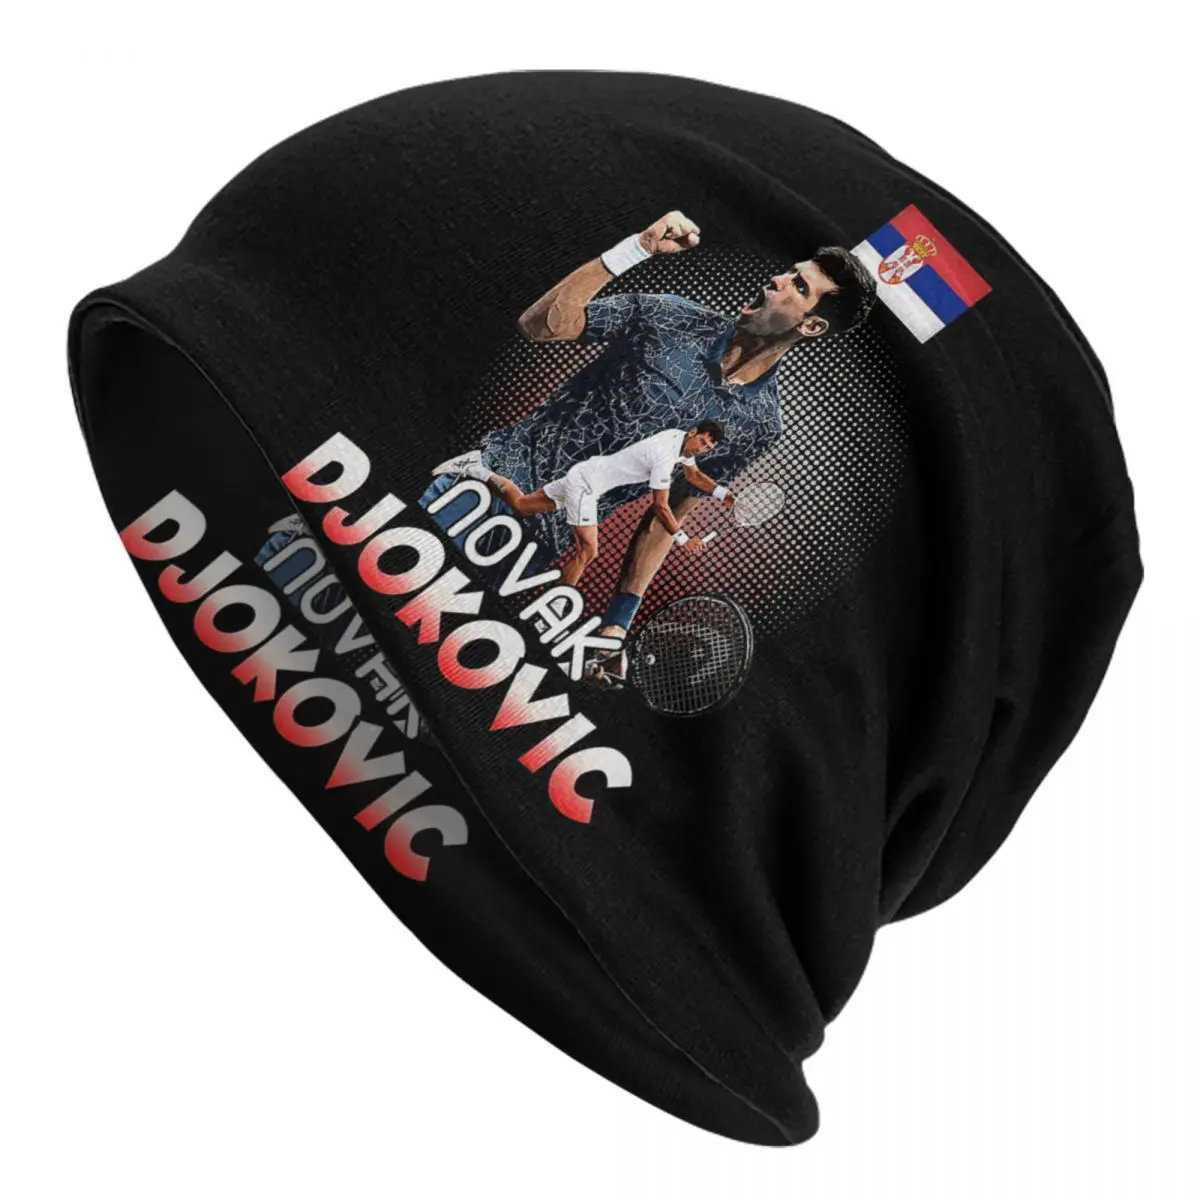 Tennis Novak DjokoVic Caps Men Women Unisex Streetwear Winter Warm Knit Hat Adult funny Hats